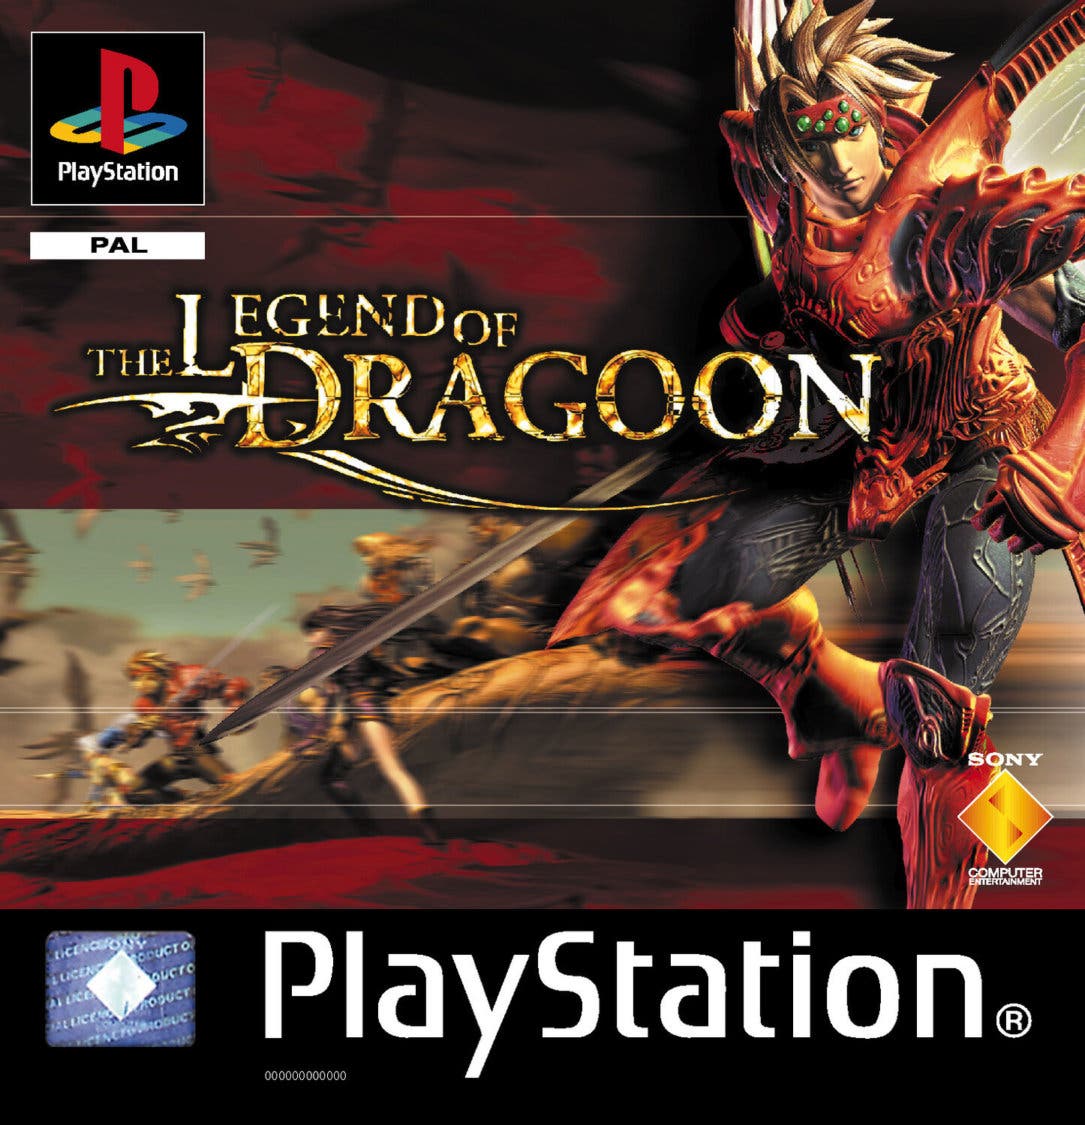 Uno de los juegos exclusivos de PS1 recibe una inesperada remasterización